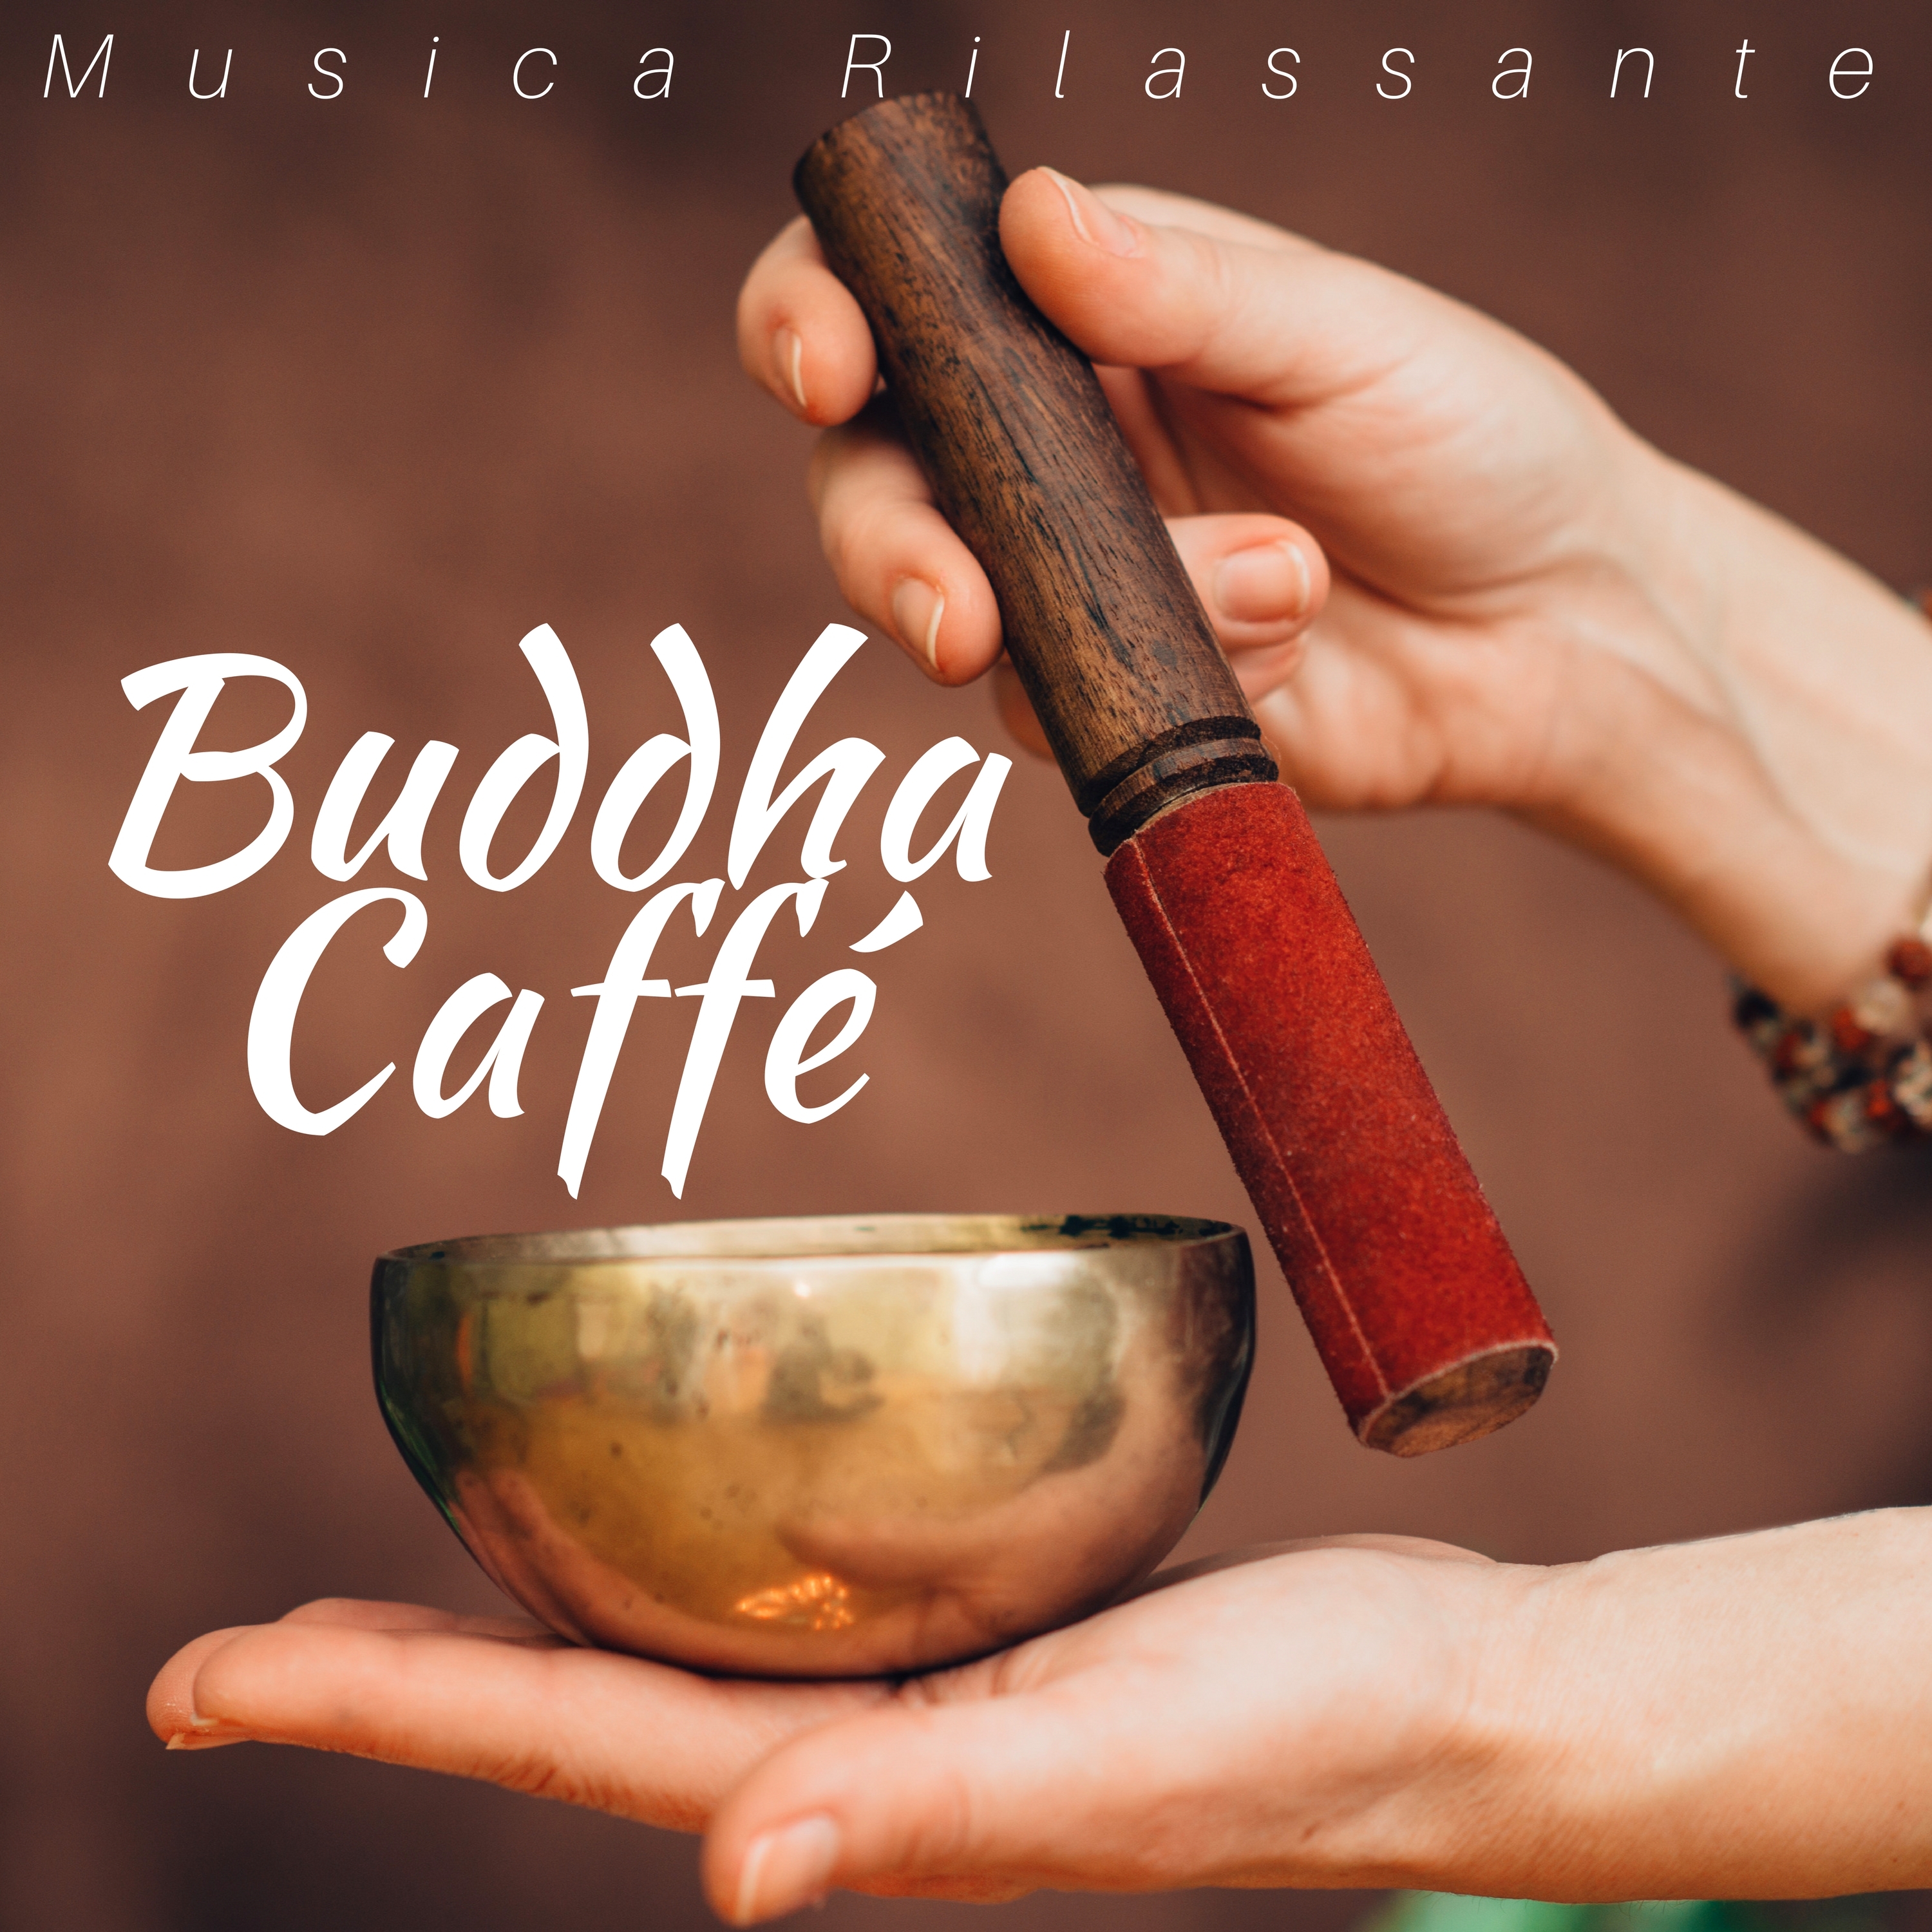 Musica Rilassante Buddista